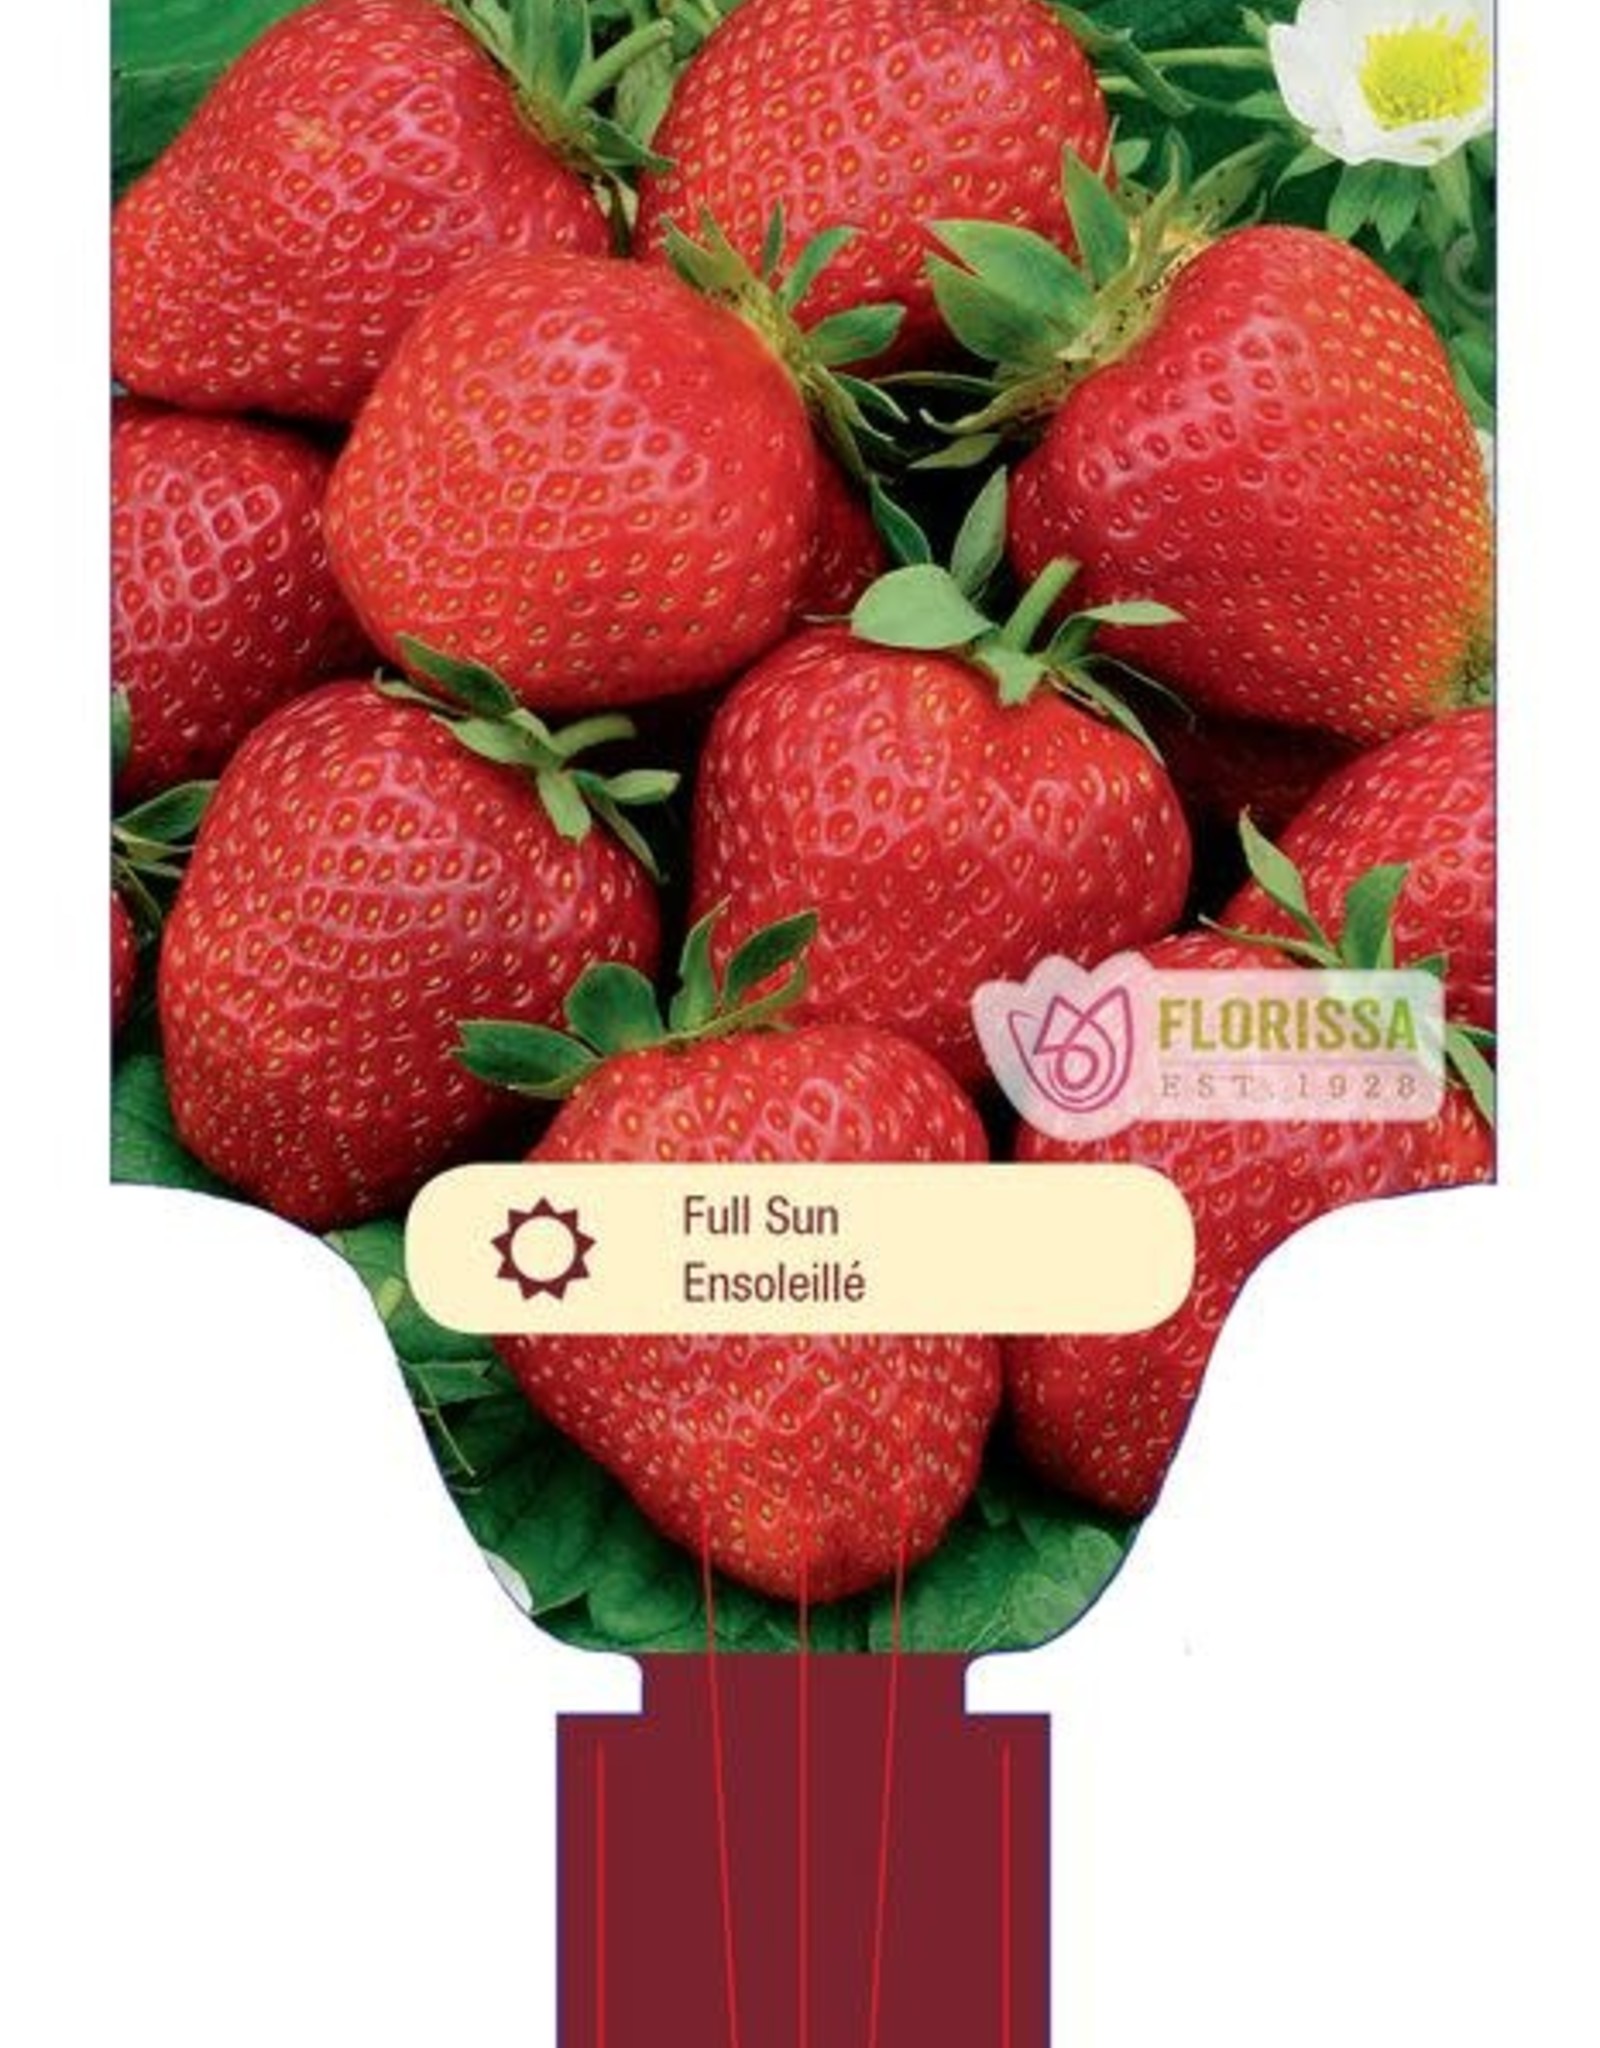 Strawberry June Bearing Eversweet - Package of 25